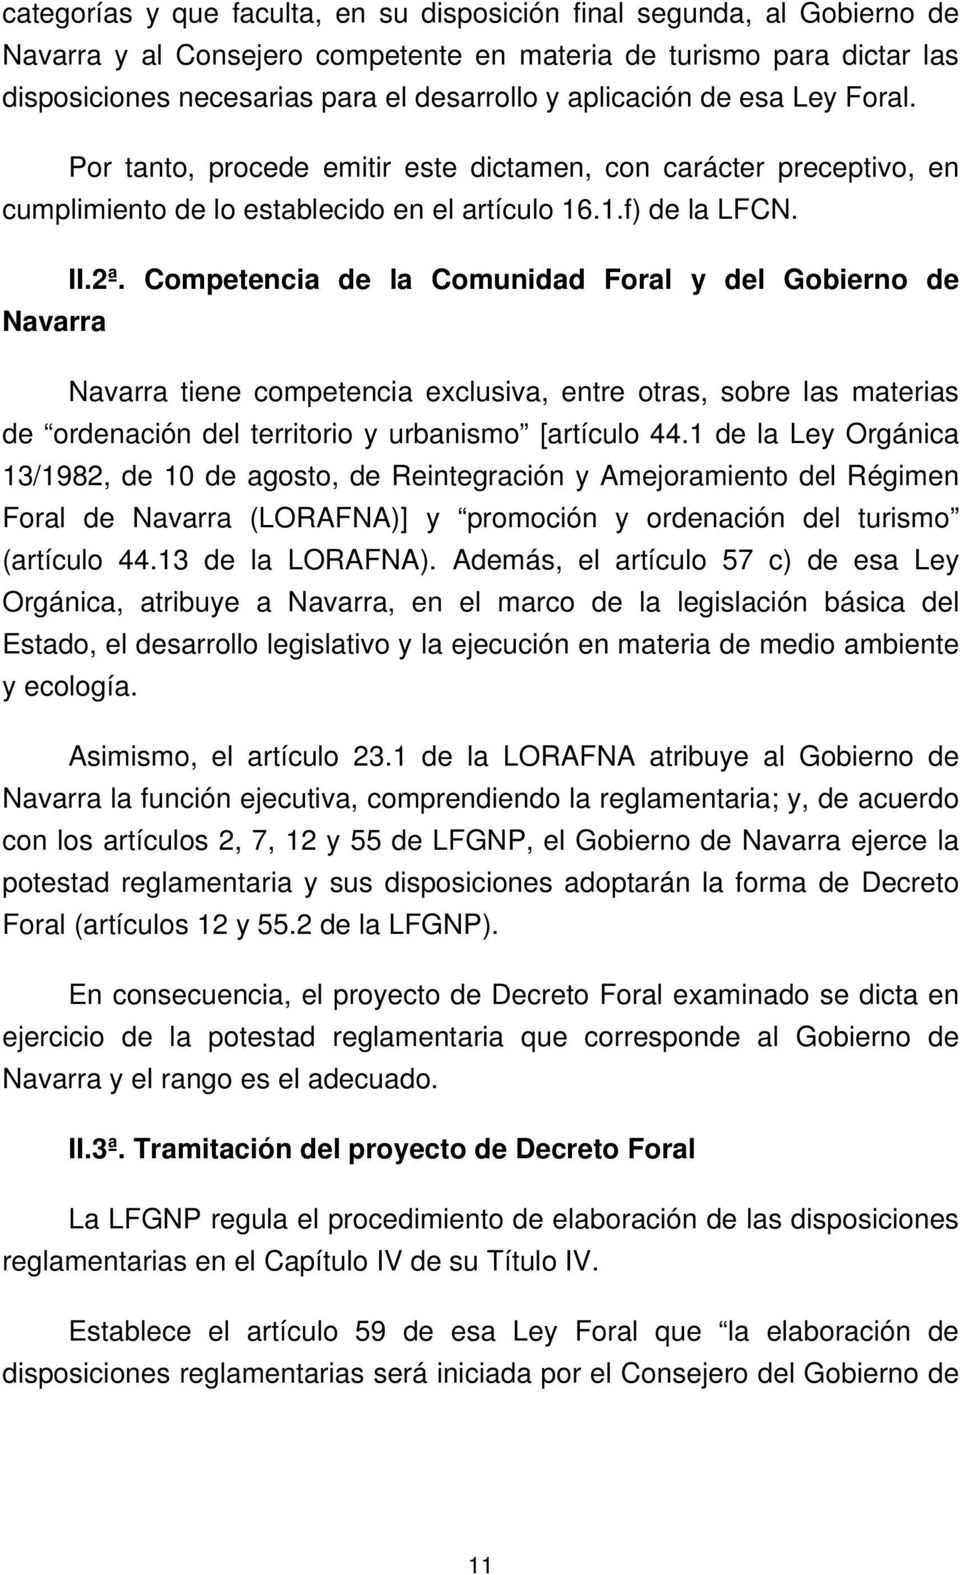 Competencia de la Comunidad Foral y del Gobierno de Navarra Navarra tiene competencia exclusiva, entre otras, sobre las materias de ordenación del territorio y urbanismo [artículo 44.